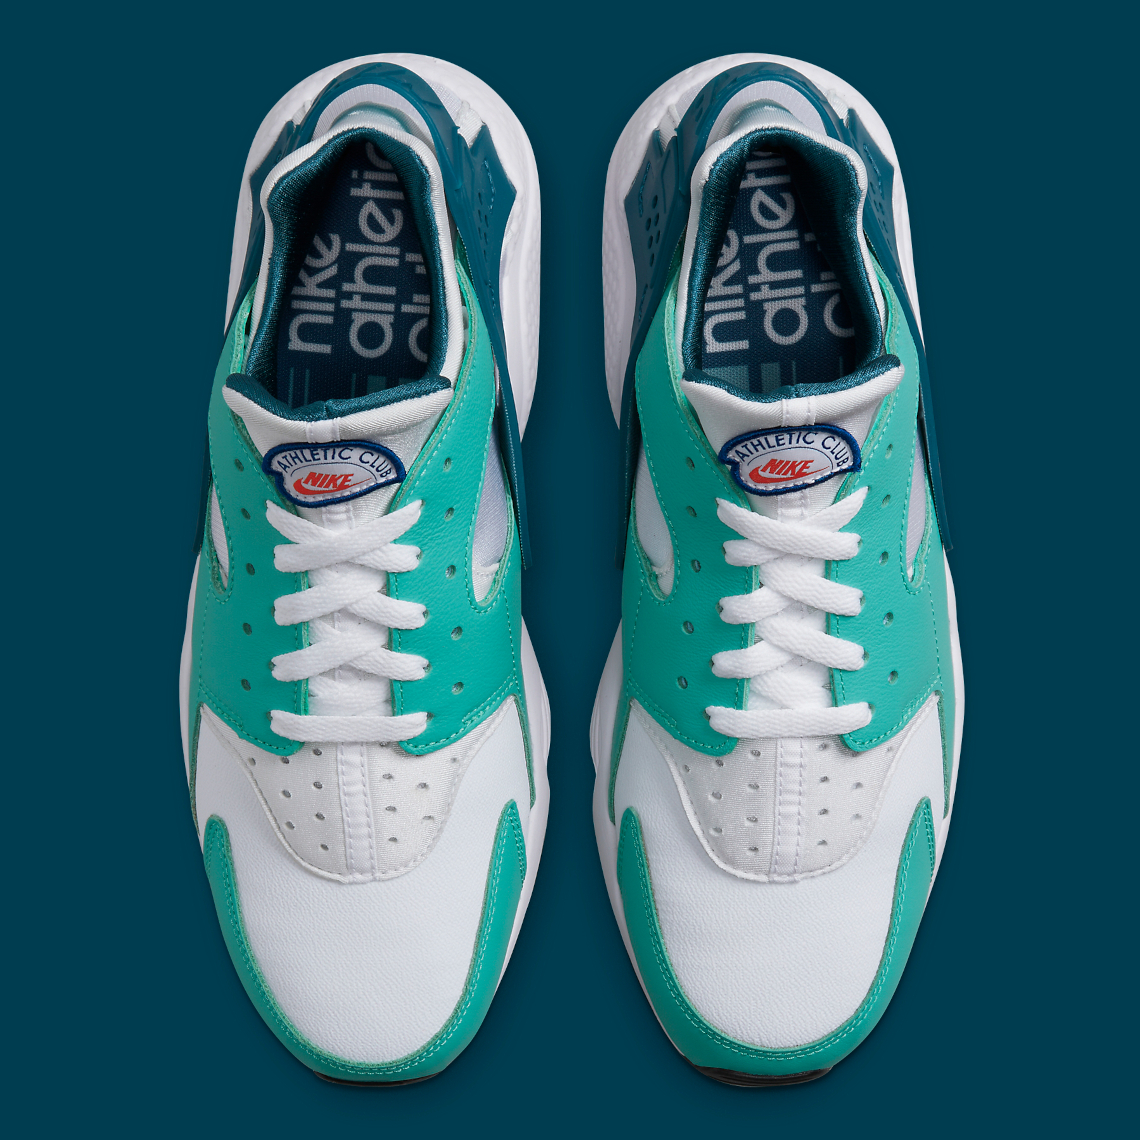 Nike Air Huarache huarache tennis shoes Athletic Club DQ8239-300 | SneakerNews.com